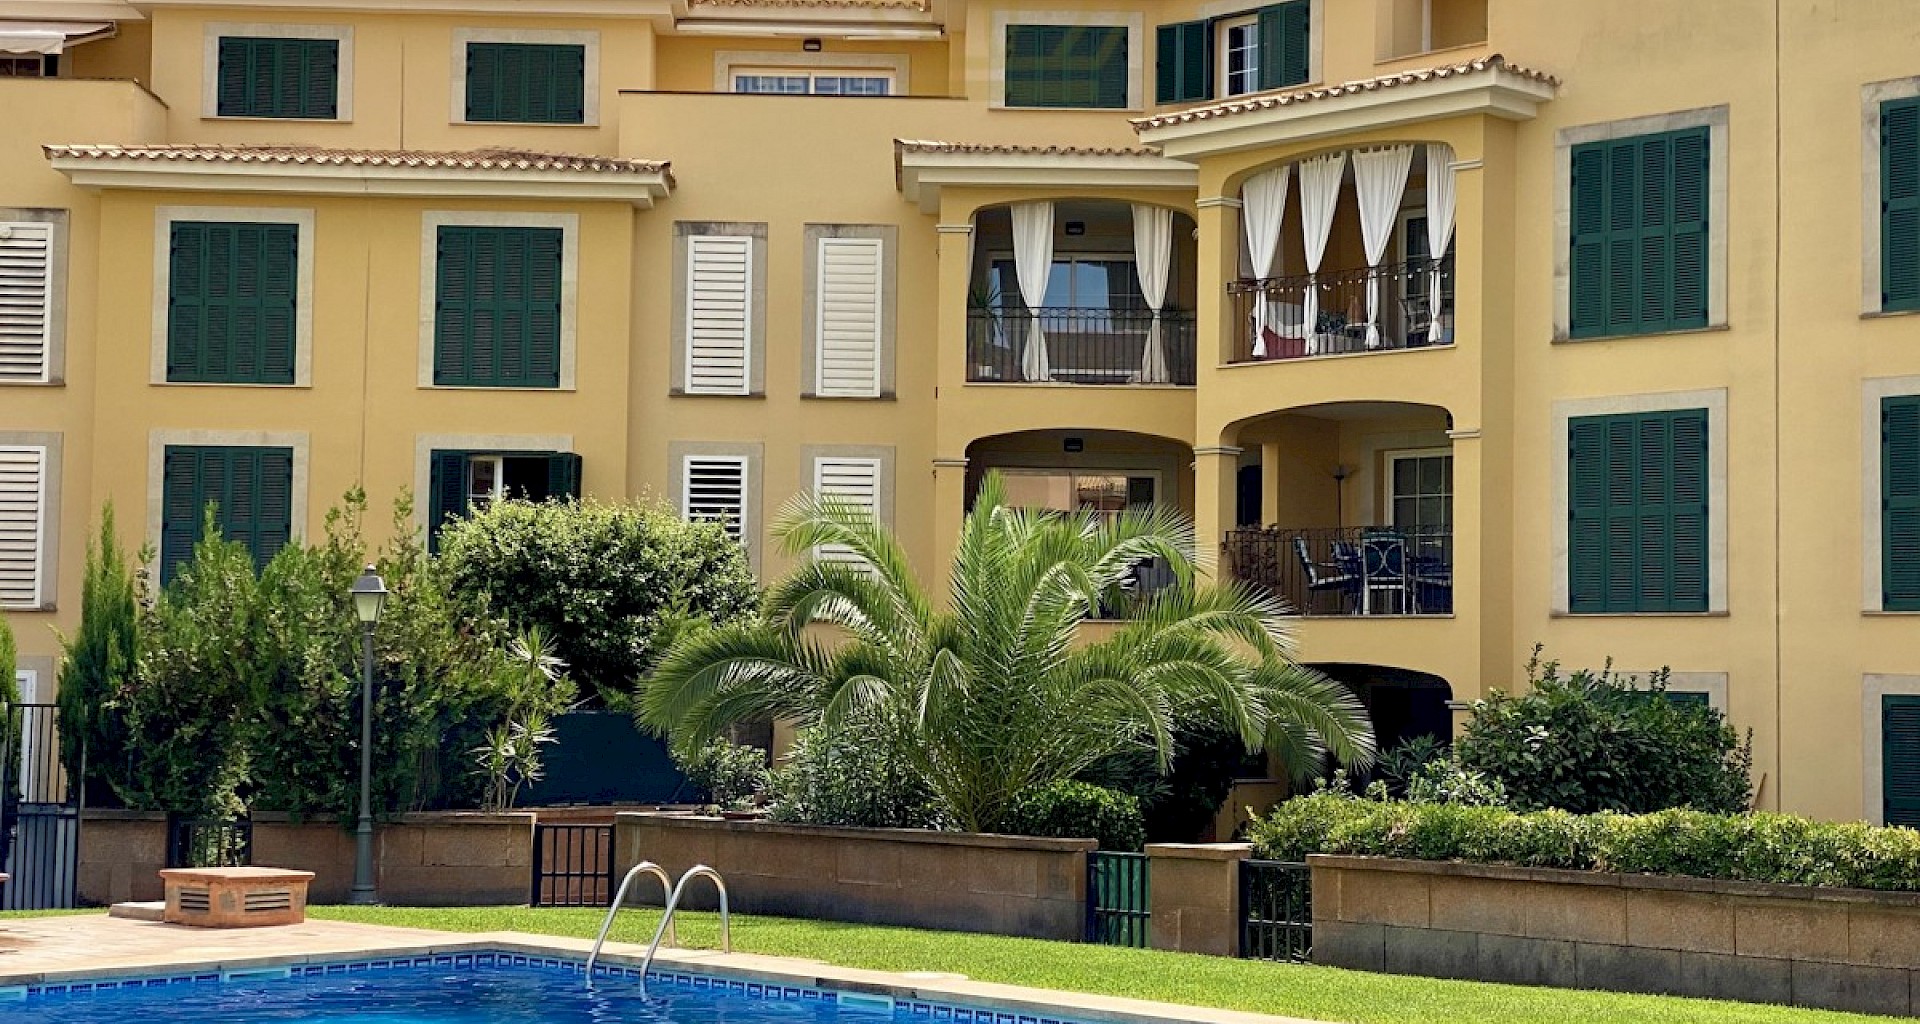 KROHN & LUEDEMANN Schöne Ferien Wohnung in Puigderros in der Nähe von Palma de Mallorca 